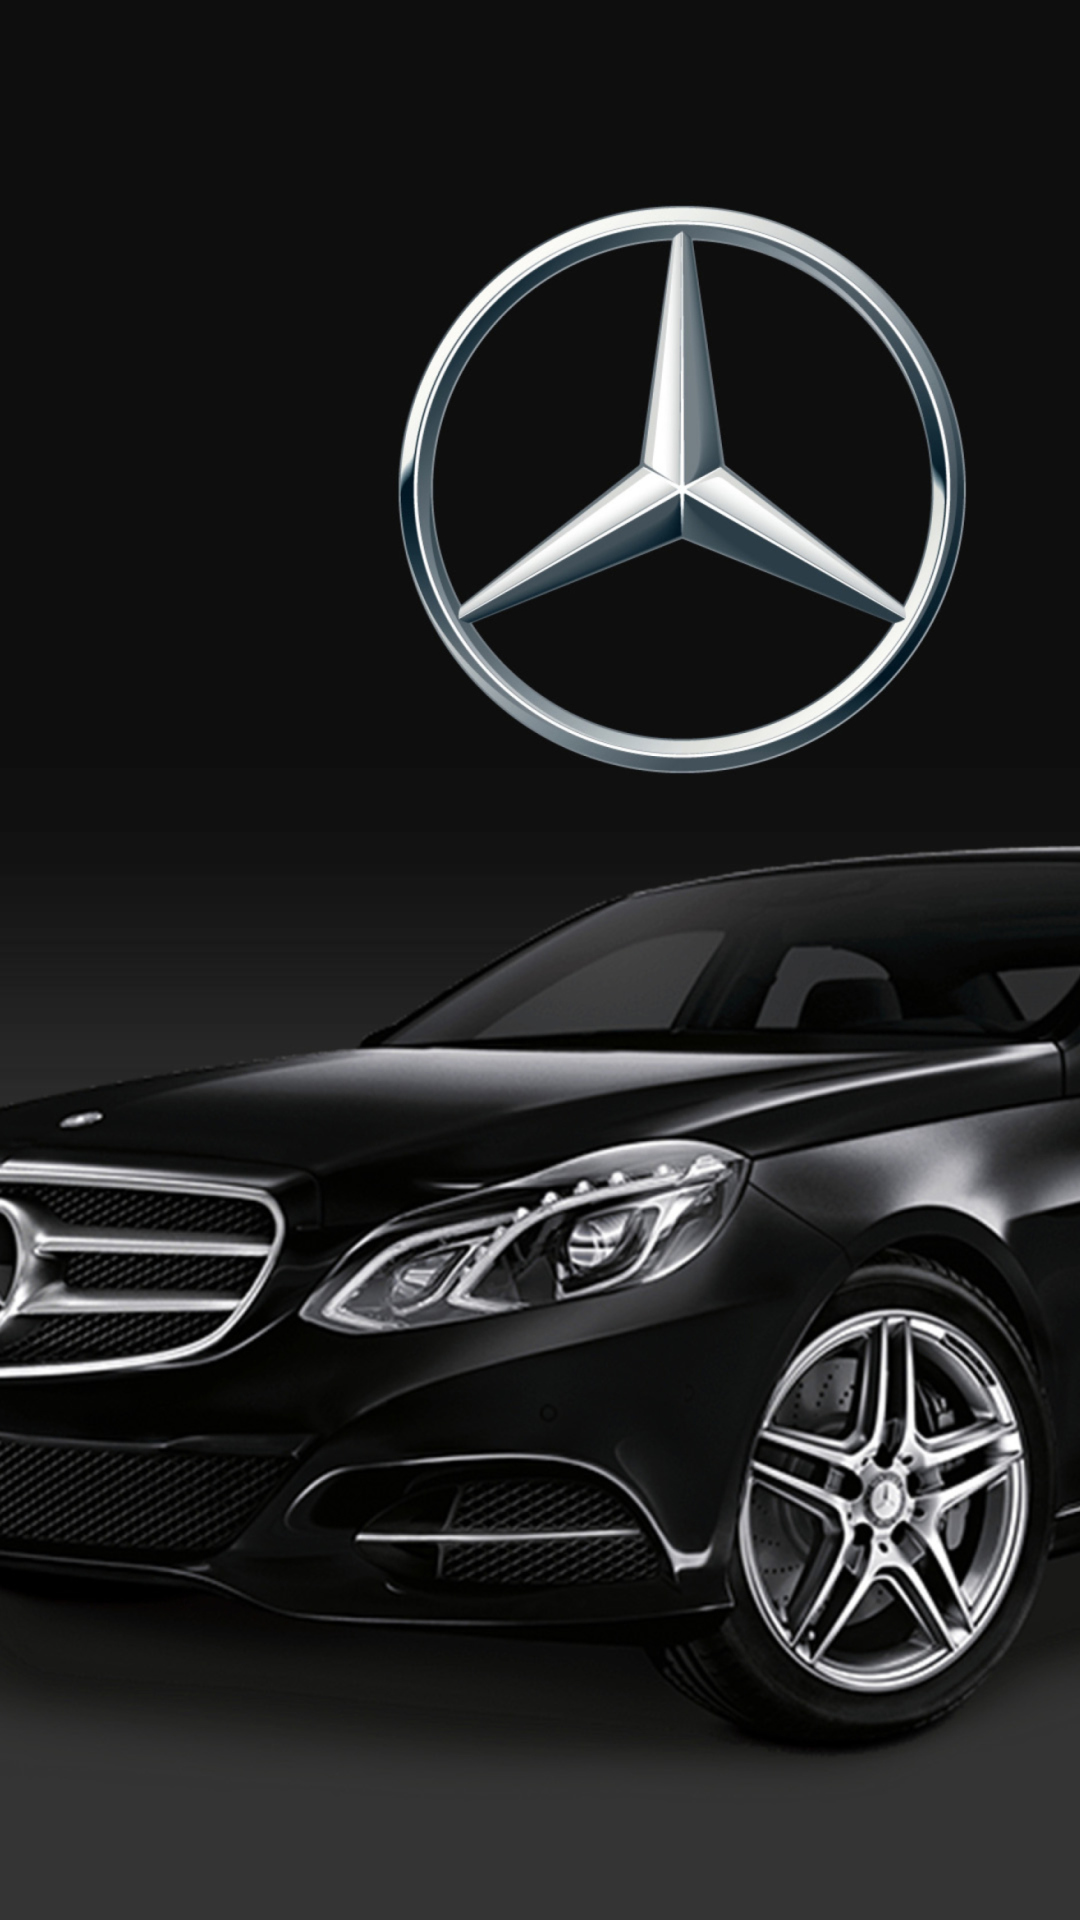 Das Mercedes S-Class Wallpaper 1080x1920